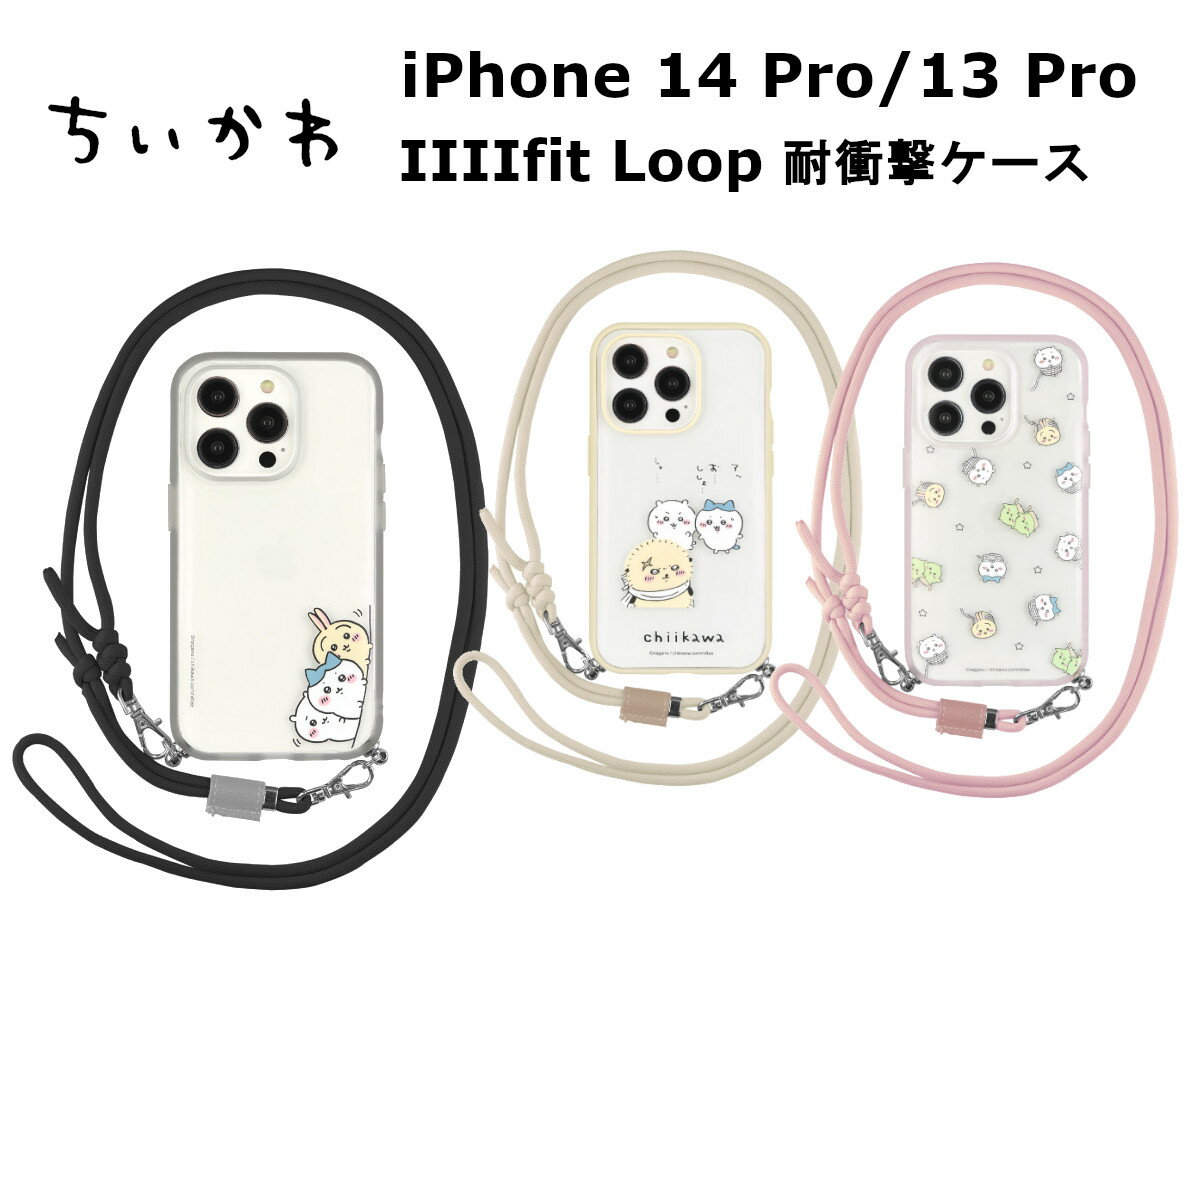 FIT グルマンディーズ iPhone 14 Pro/ 13 Pro 国内メーカー品 ケース カバー iPhone14Pro/13Pro アイフォンフォーティーンプロ サーティーンプロ アイホン スマホケース 携帯ケース ちいかわ IIIIfit Loop イーフィットループ ひょっこり ラッコ 総柄 かわいい おしゃれ